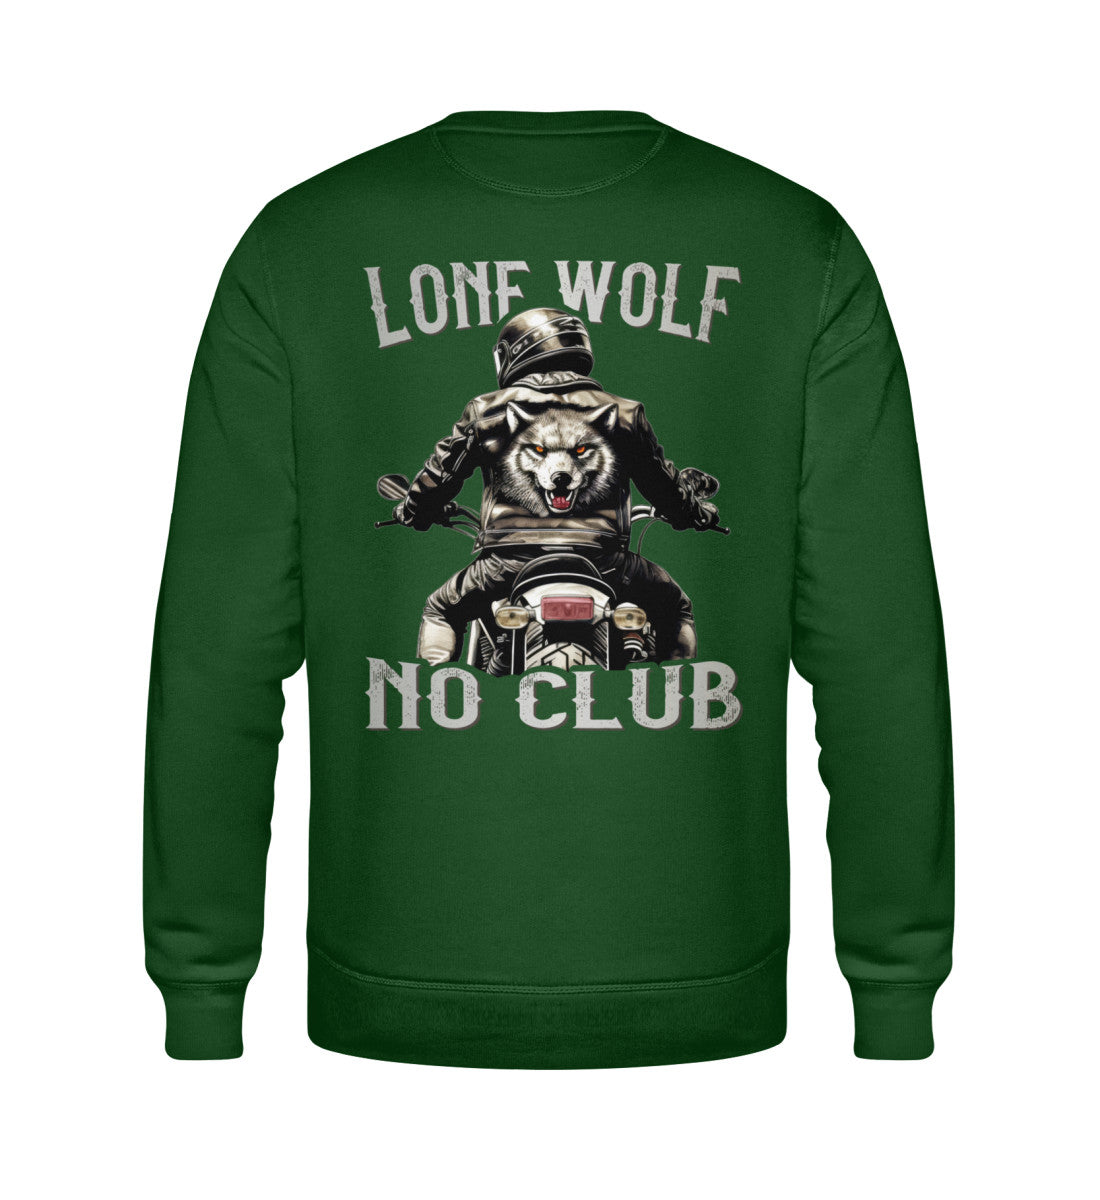 Ein Biker Sweatshirt für Motorradfahrer von Wingbikers mit dem Aufdruck, Lone Wolf - No Club, als Back Print, in dunkelgrün.